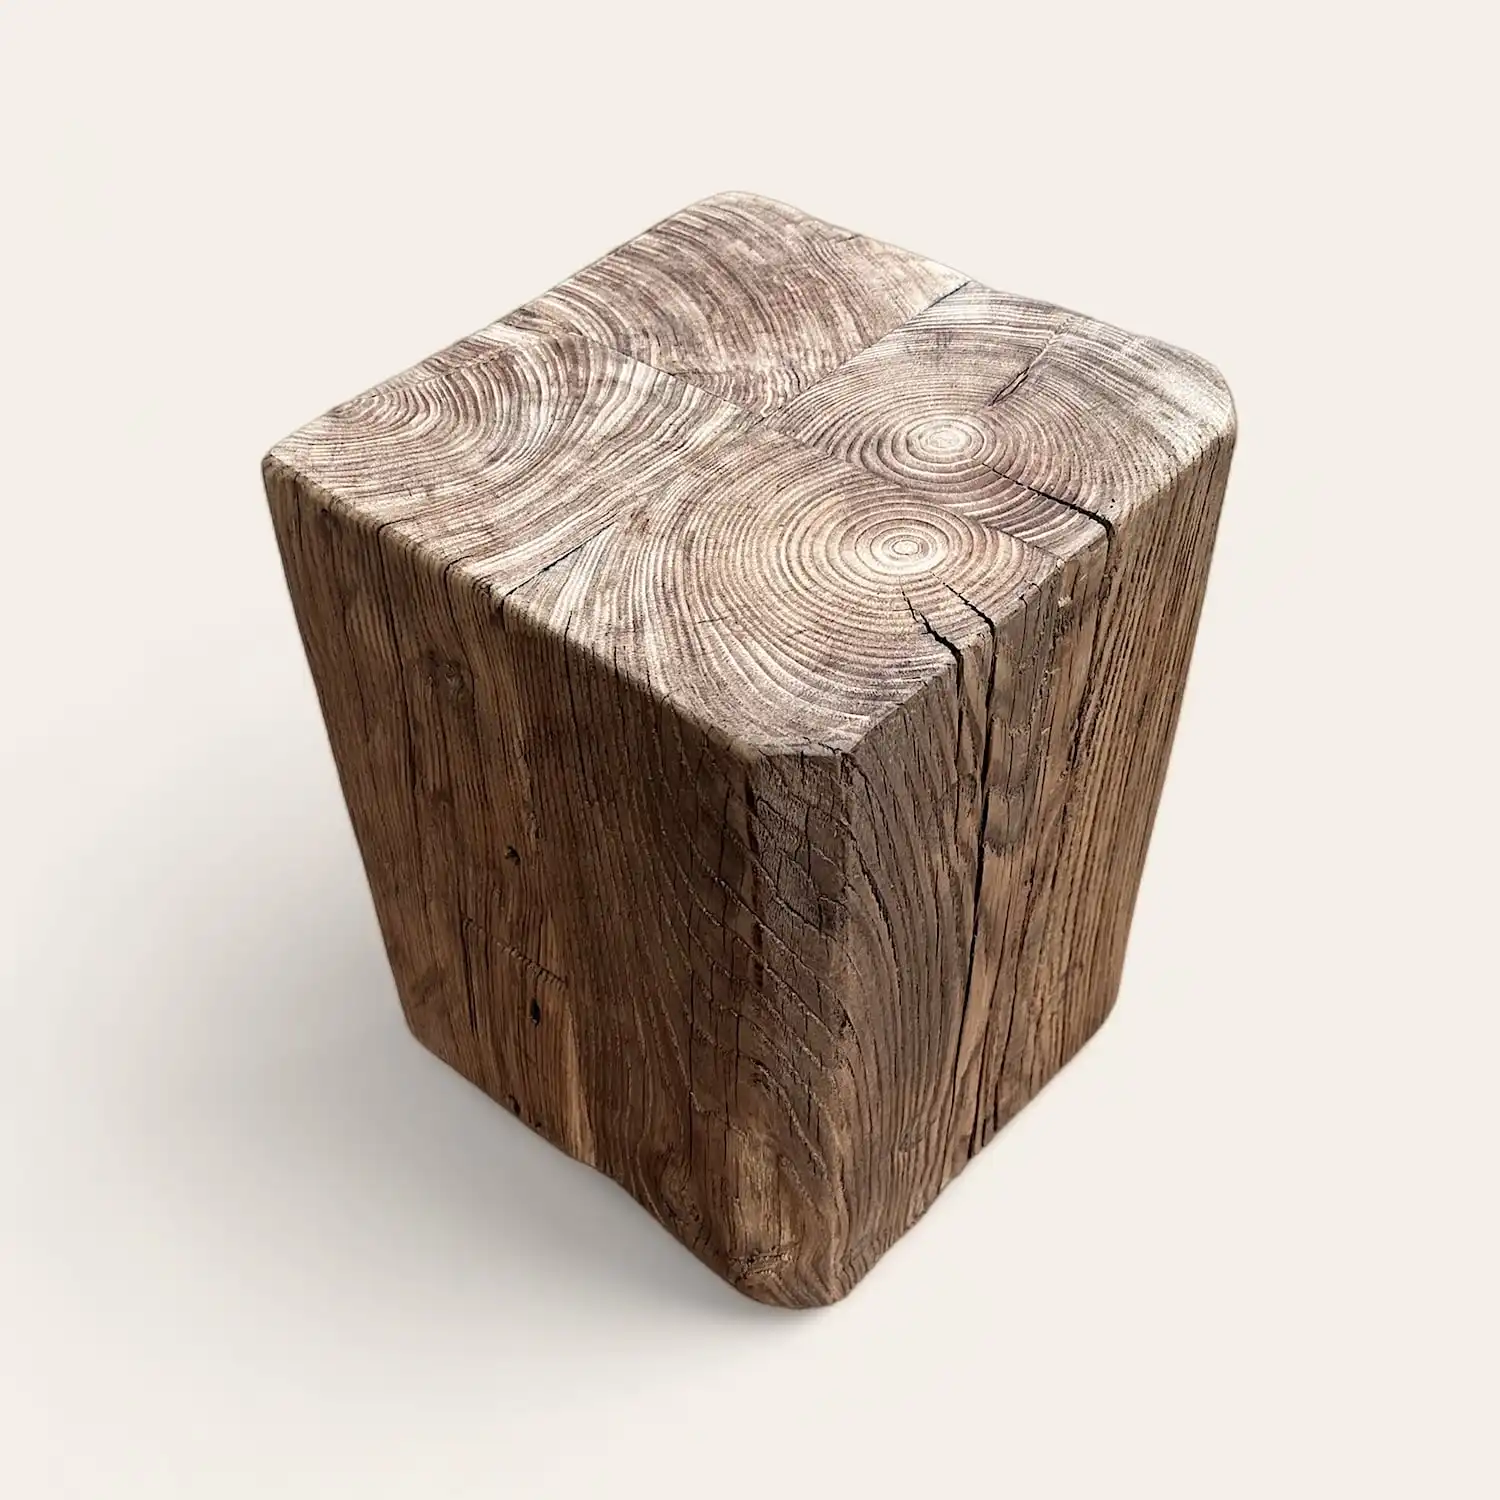  Un cube en bois ancien avec un nœud. 